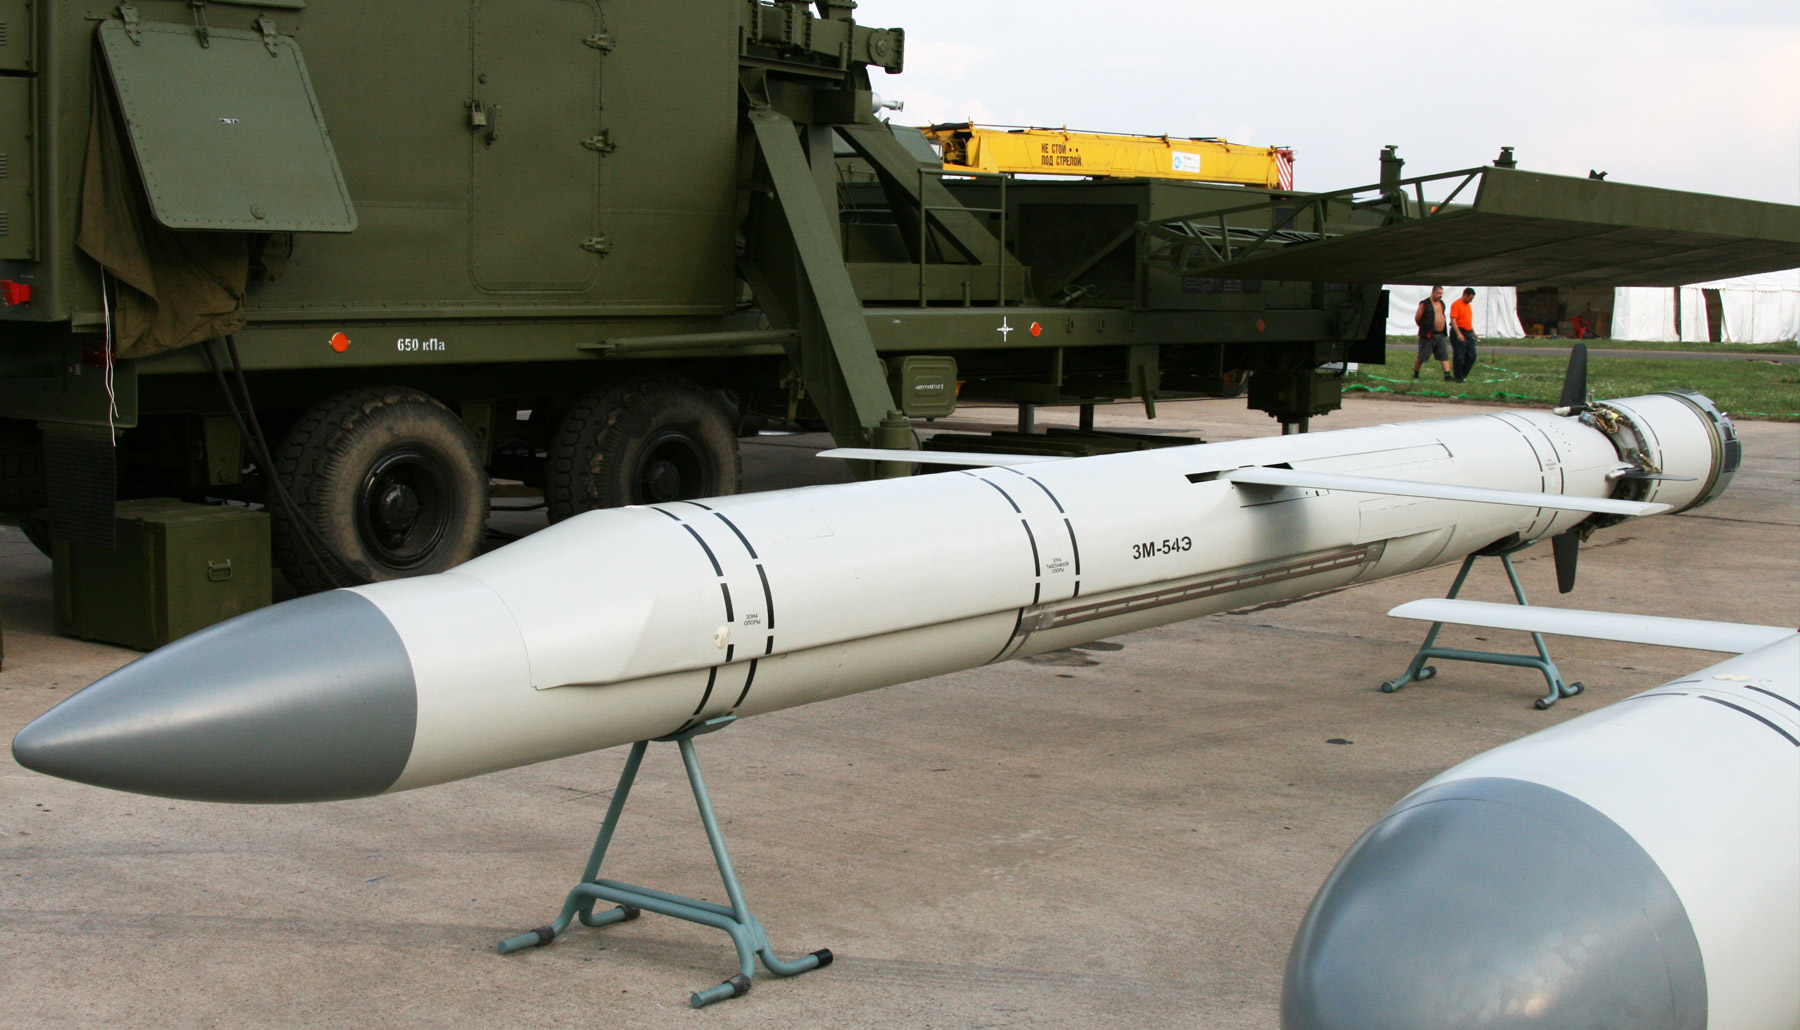 Крылатая противокорабельная ракета п-35 (п-6) 4к44, описание и характеристики